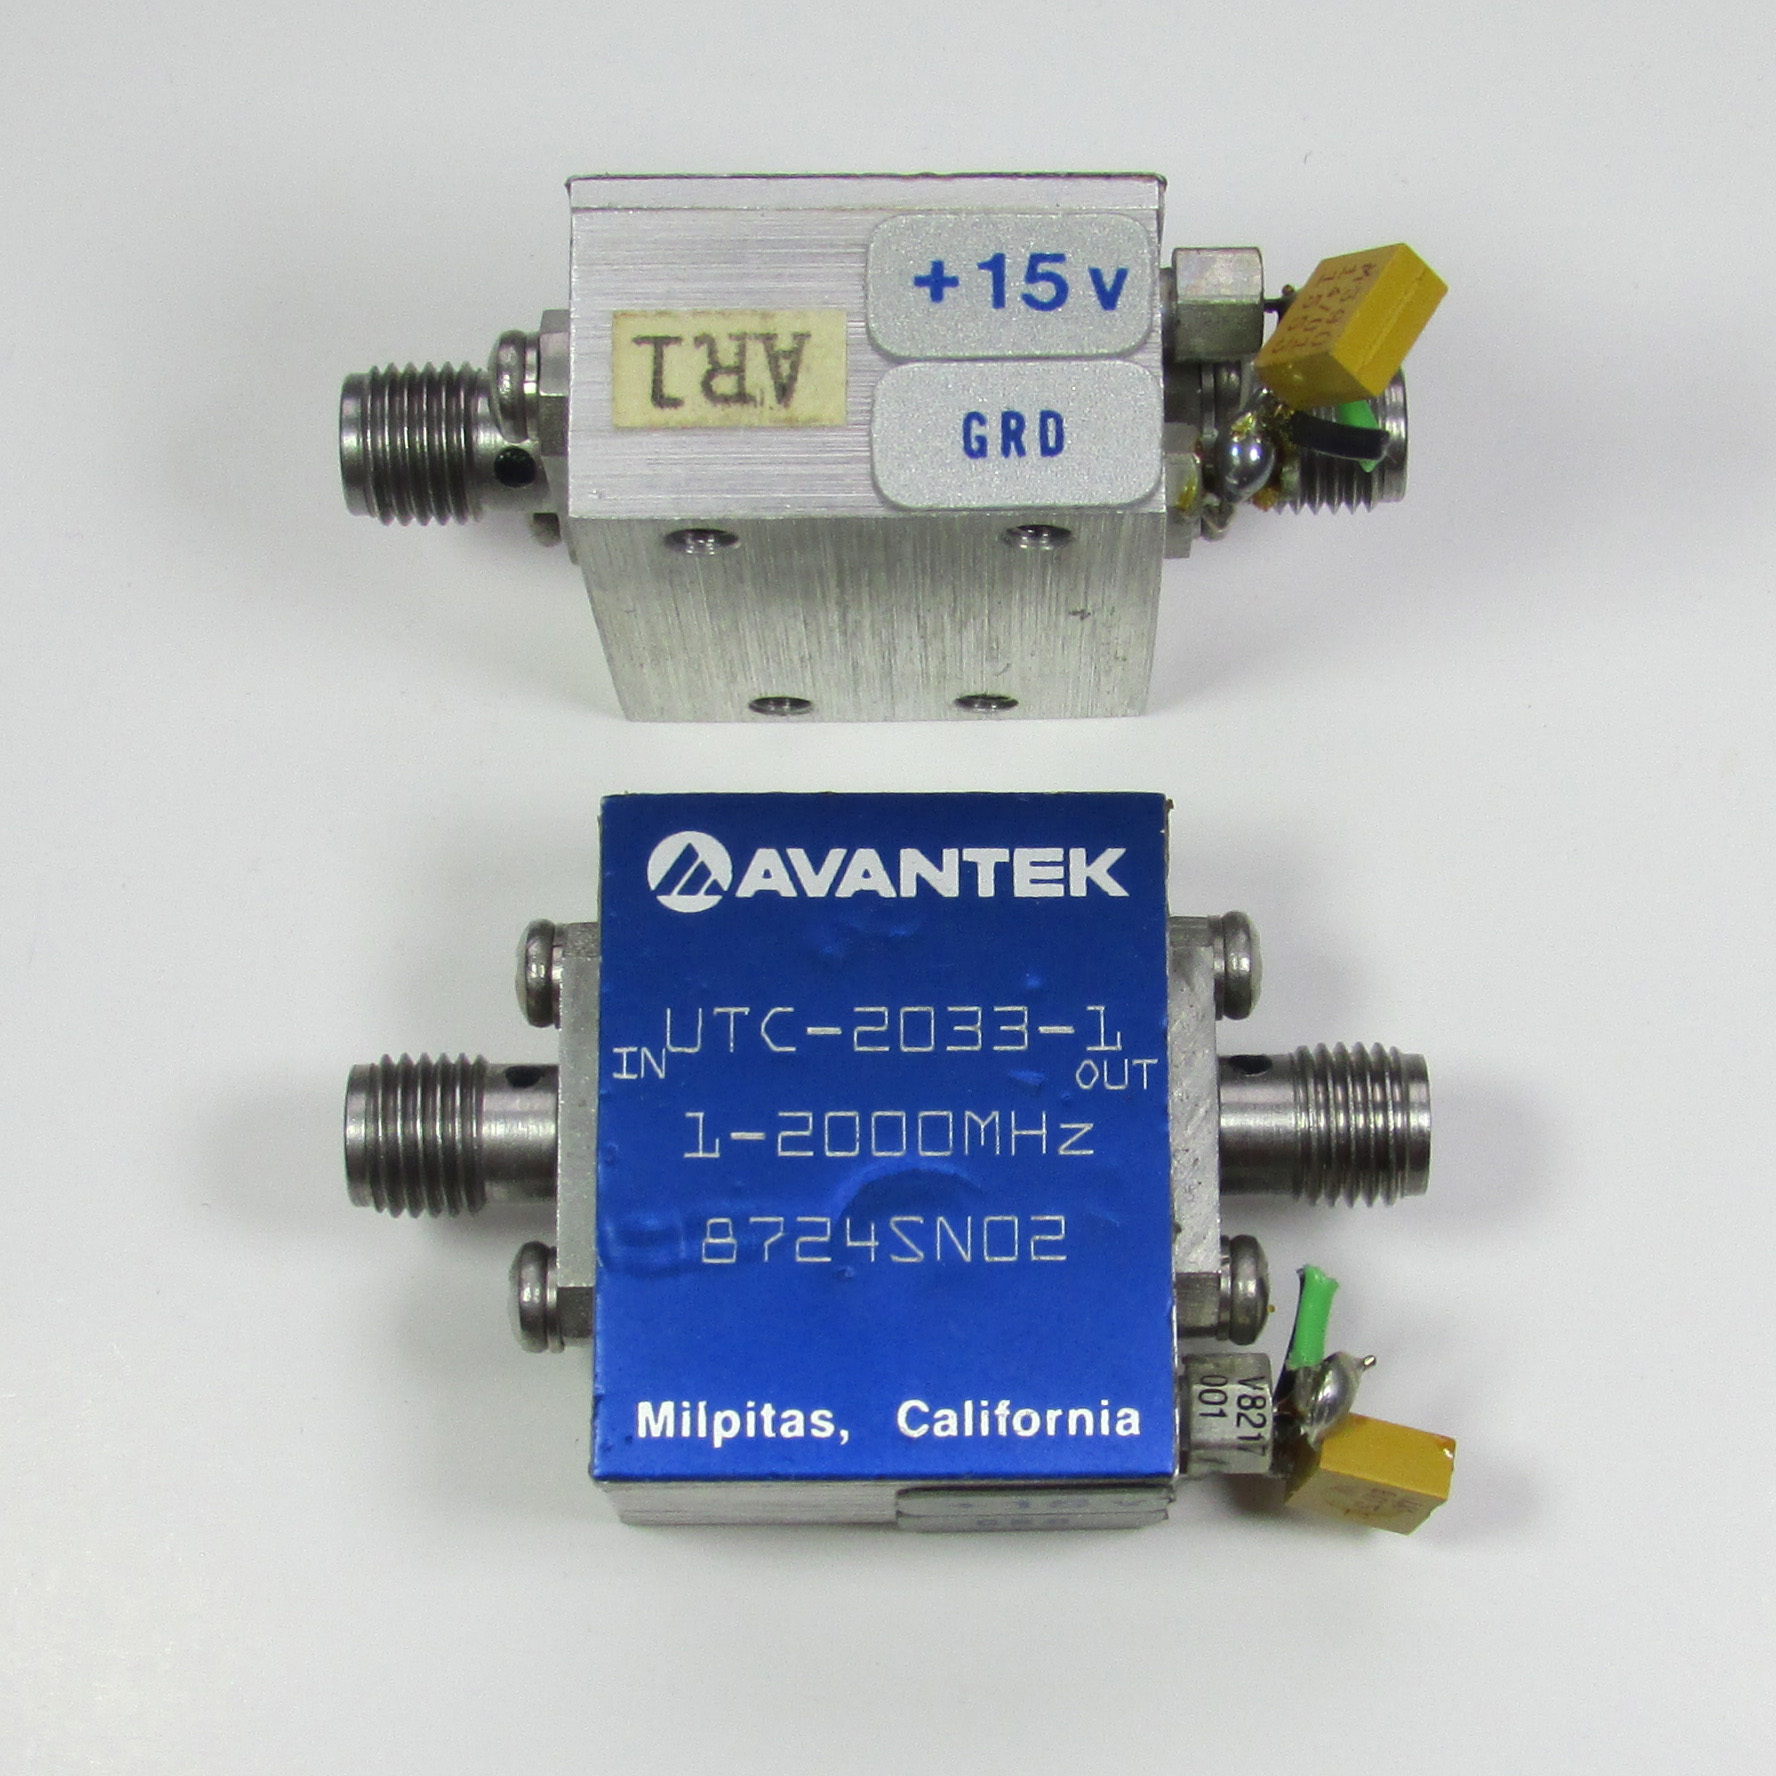 AVANTEK UTC-2033-1 1-2000MHz 8.5dB 16dBm SMA RF Low Noise Amplifier